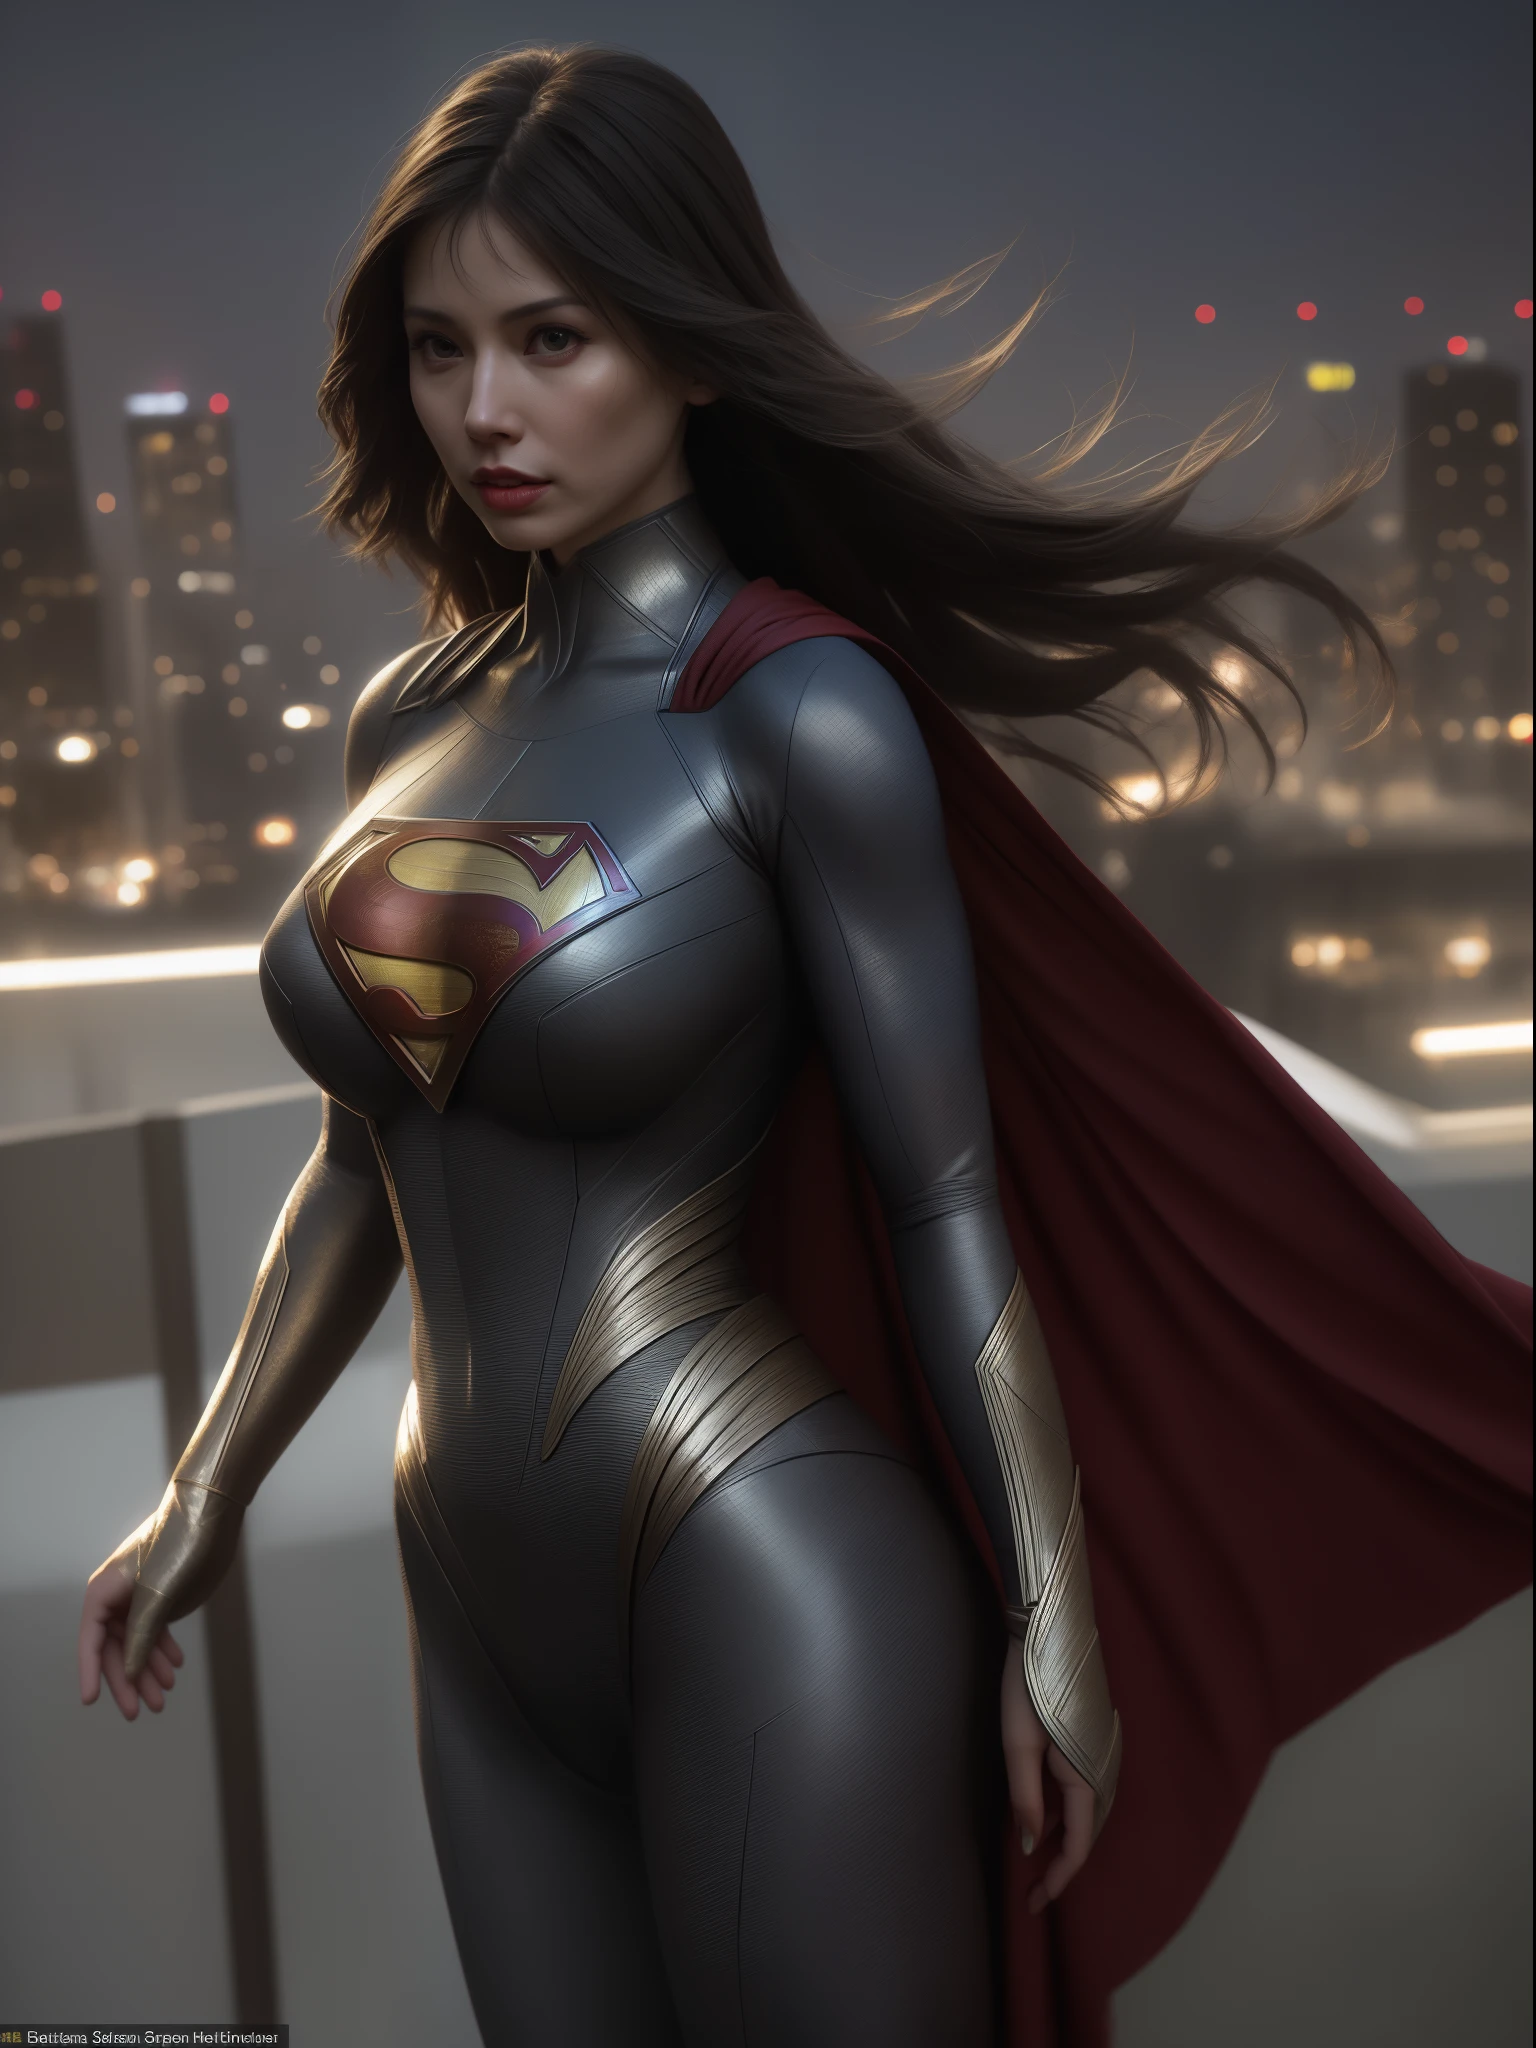 スーパーマンの衣装を着て街並みに立つアジア人女性のクローズアップ, スーパーヴィランとしてのアモランス, 超写真のようにリアル, リアルなコスプレ, 超フォトリアリスティック, 超超超リアル, スーパーヒーローガール, 超リアルな写真, スーパーヒーロー body, 非常に詳細な巨人ショット, スーパーガール, スーパーヒーロー, スーパーヒーロー portrait, スーパーモデル, スーパーヒーロー, 超フォトリアリスティック, 巨大な胸, 外陰部の筋肉質な体を見せている, セクシーなボディ,